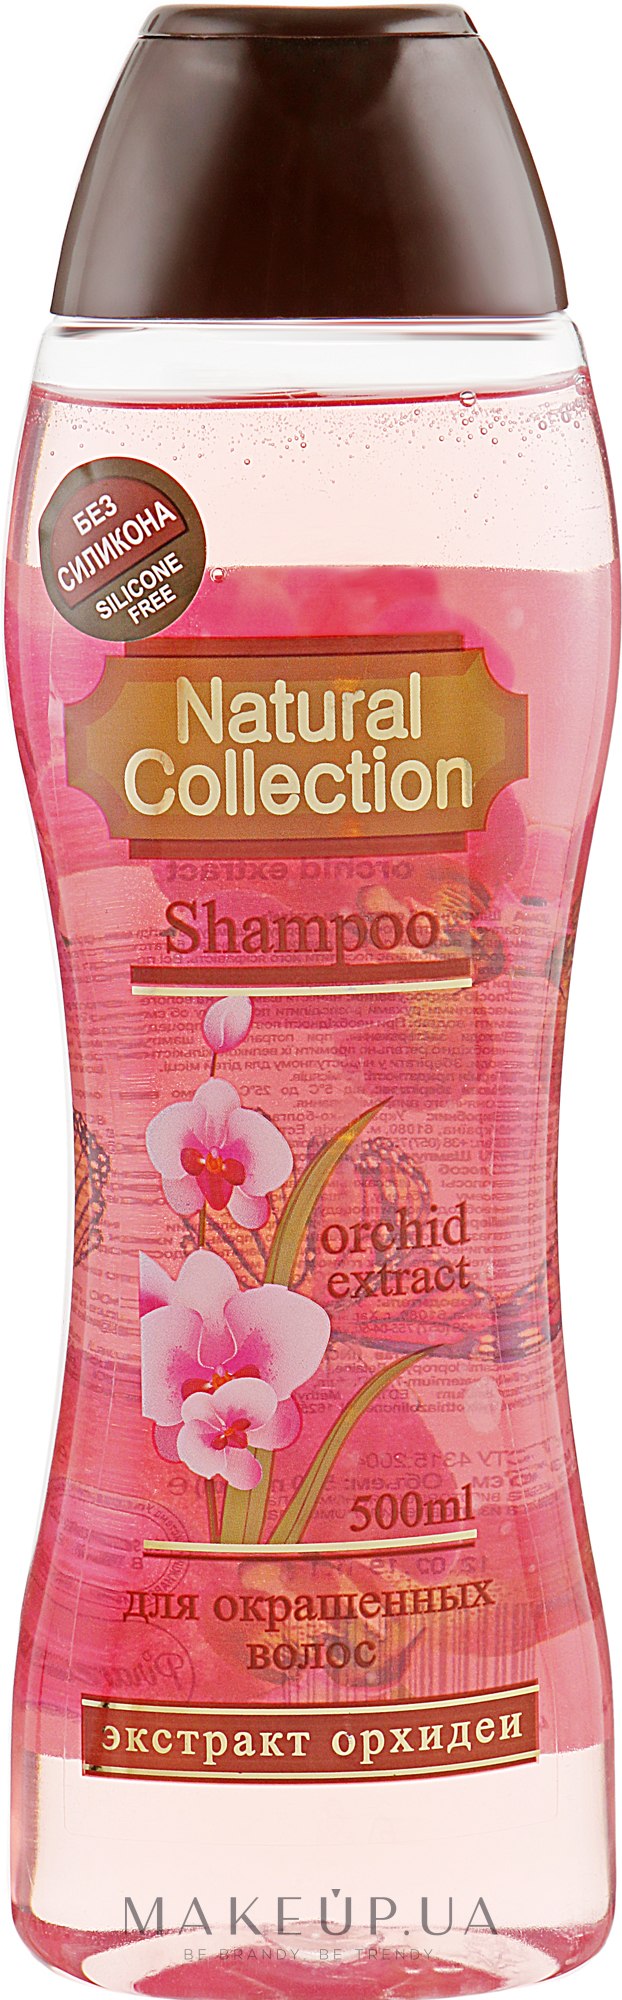 Шампунь для волос с экстрактом орхидеи - Pirana Natural Collection Shampoo  — фото 500ml